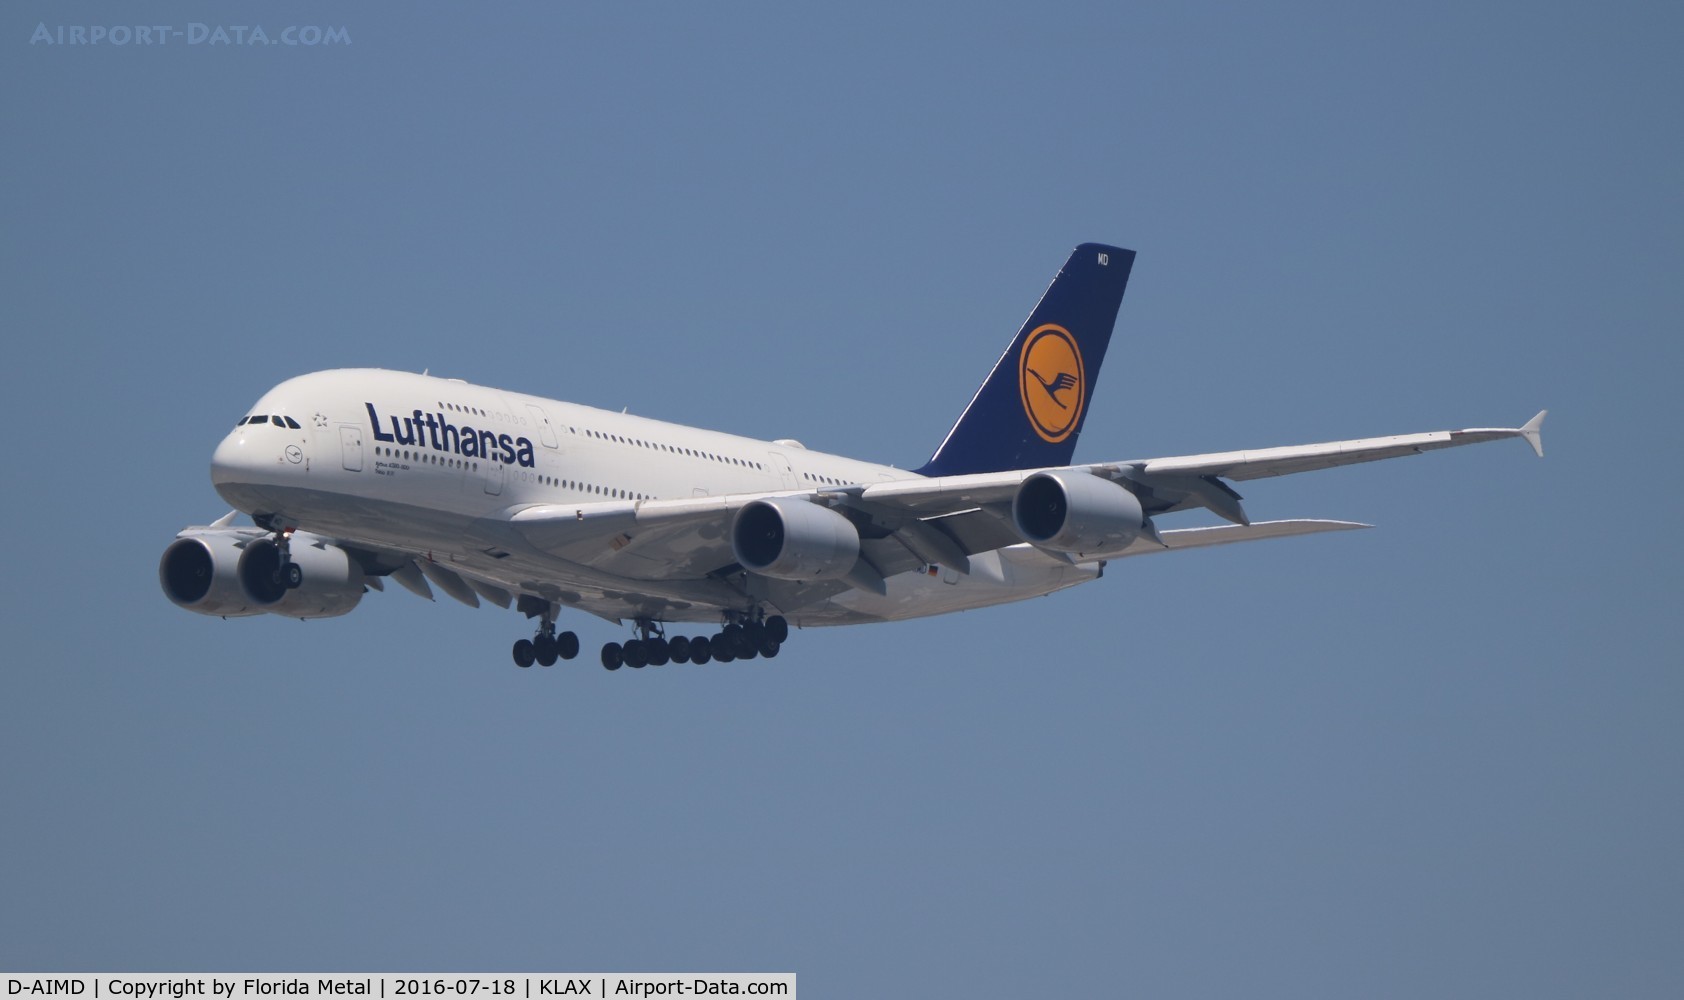 D-AIMD, 2010 Airbus A380-841 C/N 048, Lufthansa A380 zx